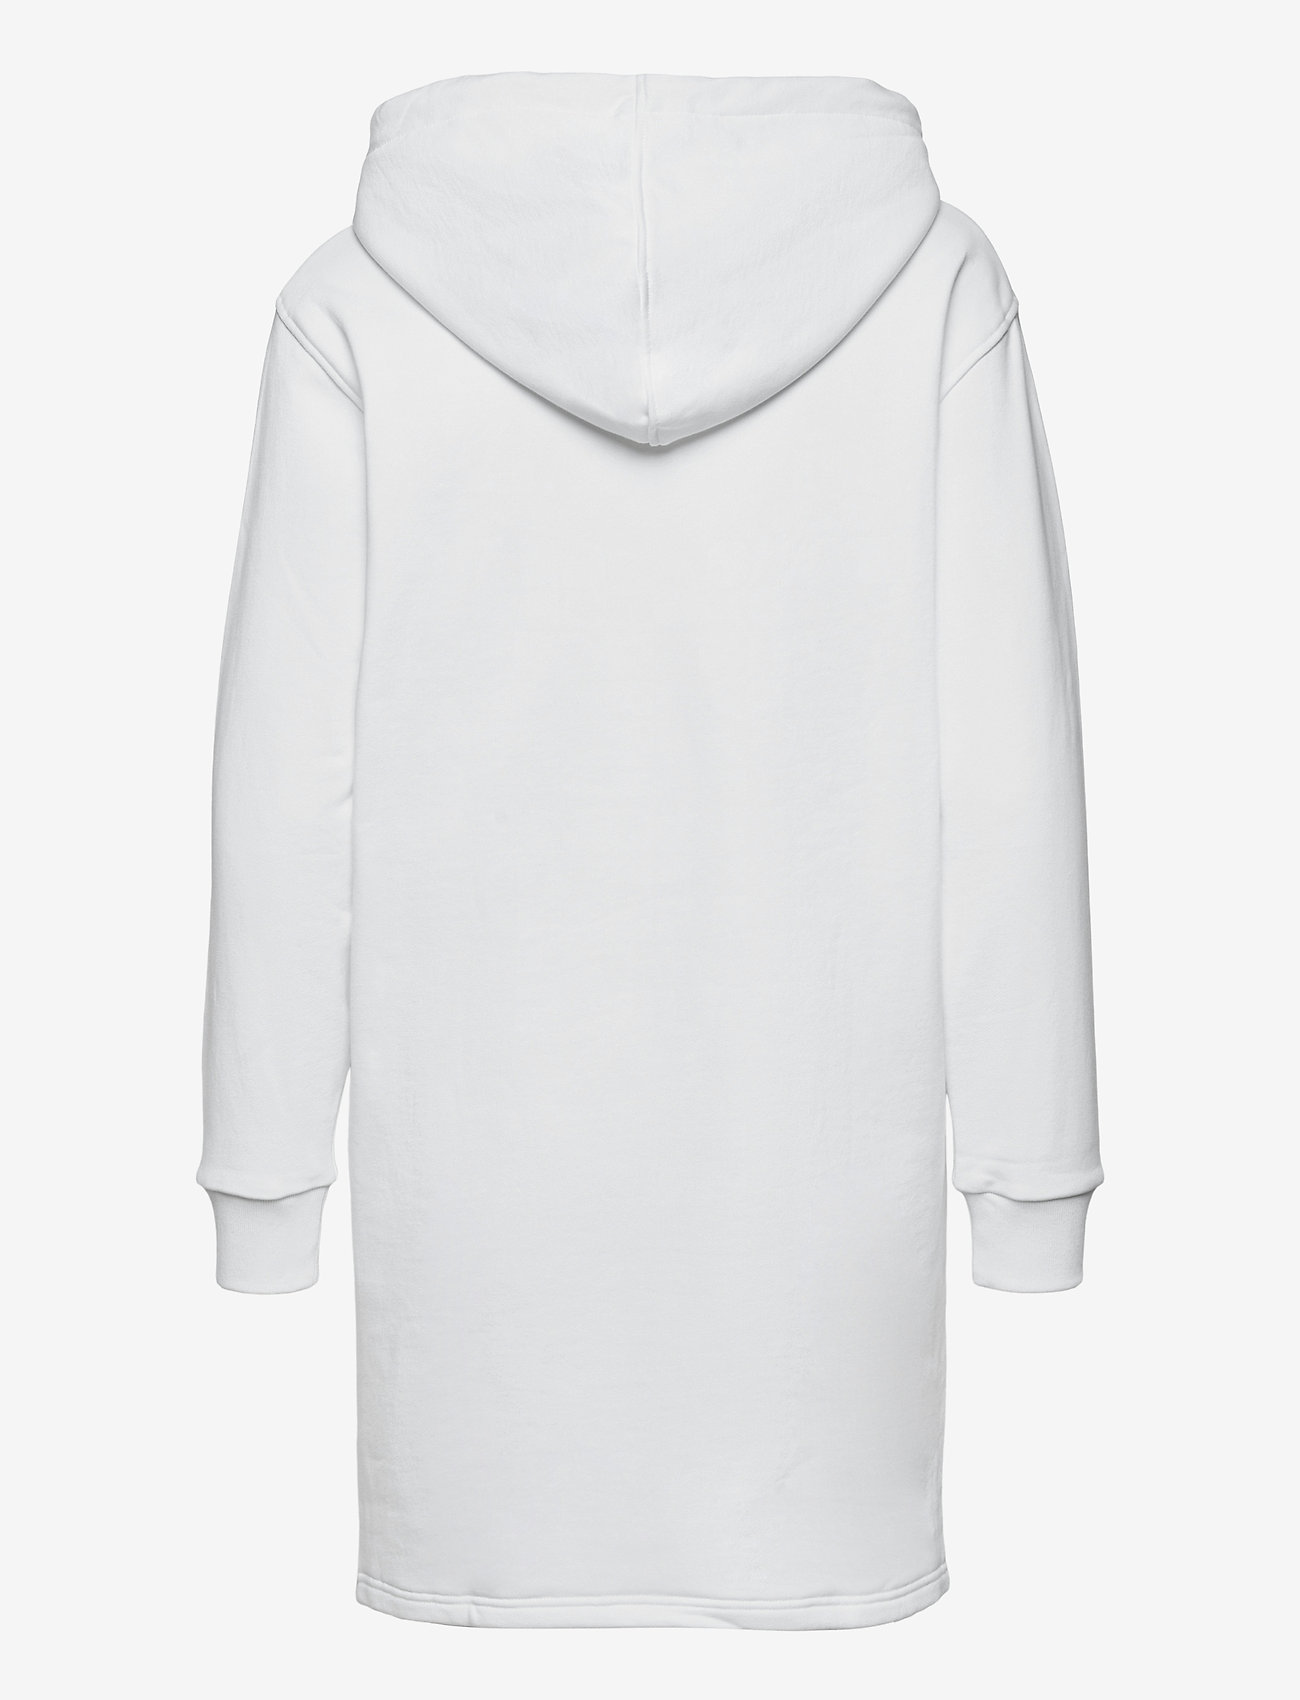 Lacoste - Women s dress - sweatshirt dresses - white - 1